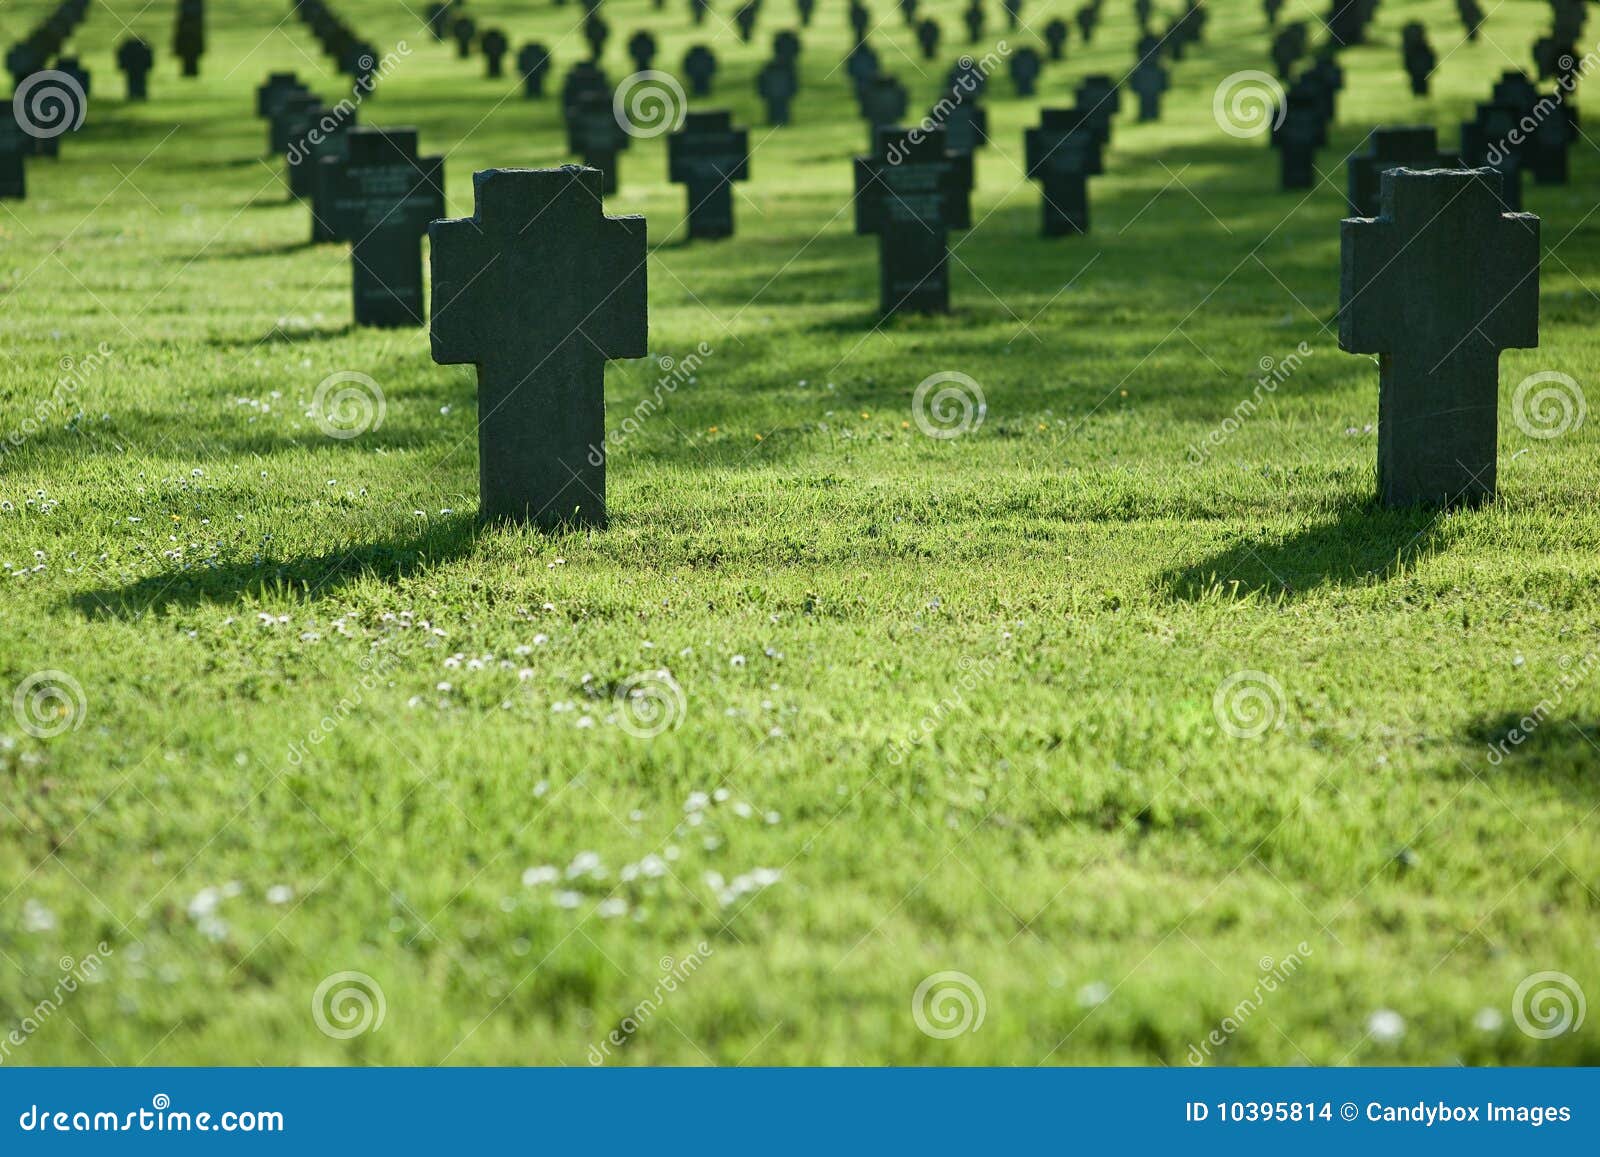 Как избавиться от травы на кладбище. Трава на кладбище. Зеленая травка на кладбище. Кладбище в зеленой траве. Кладбищенская трава.